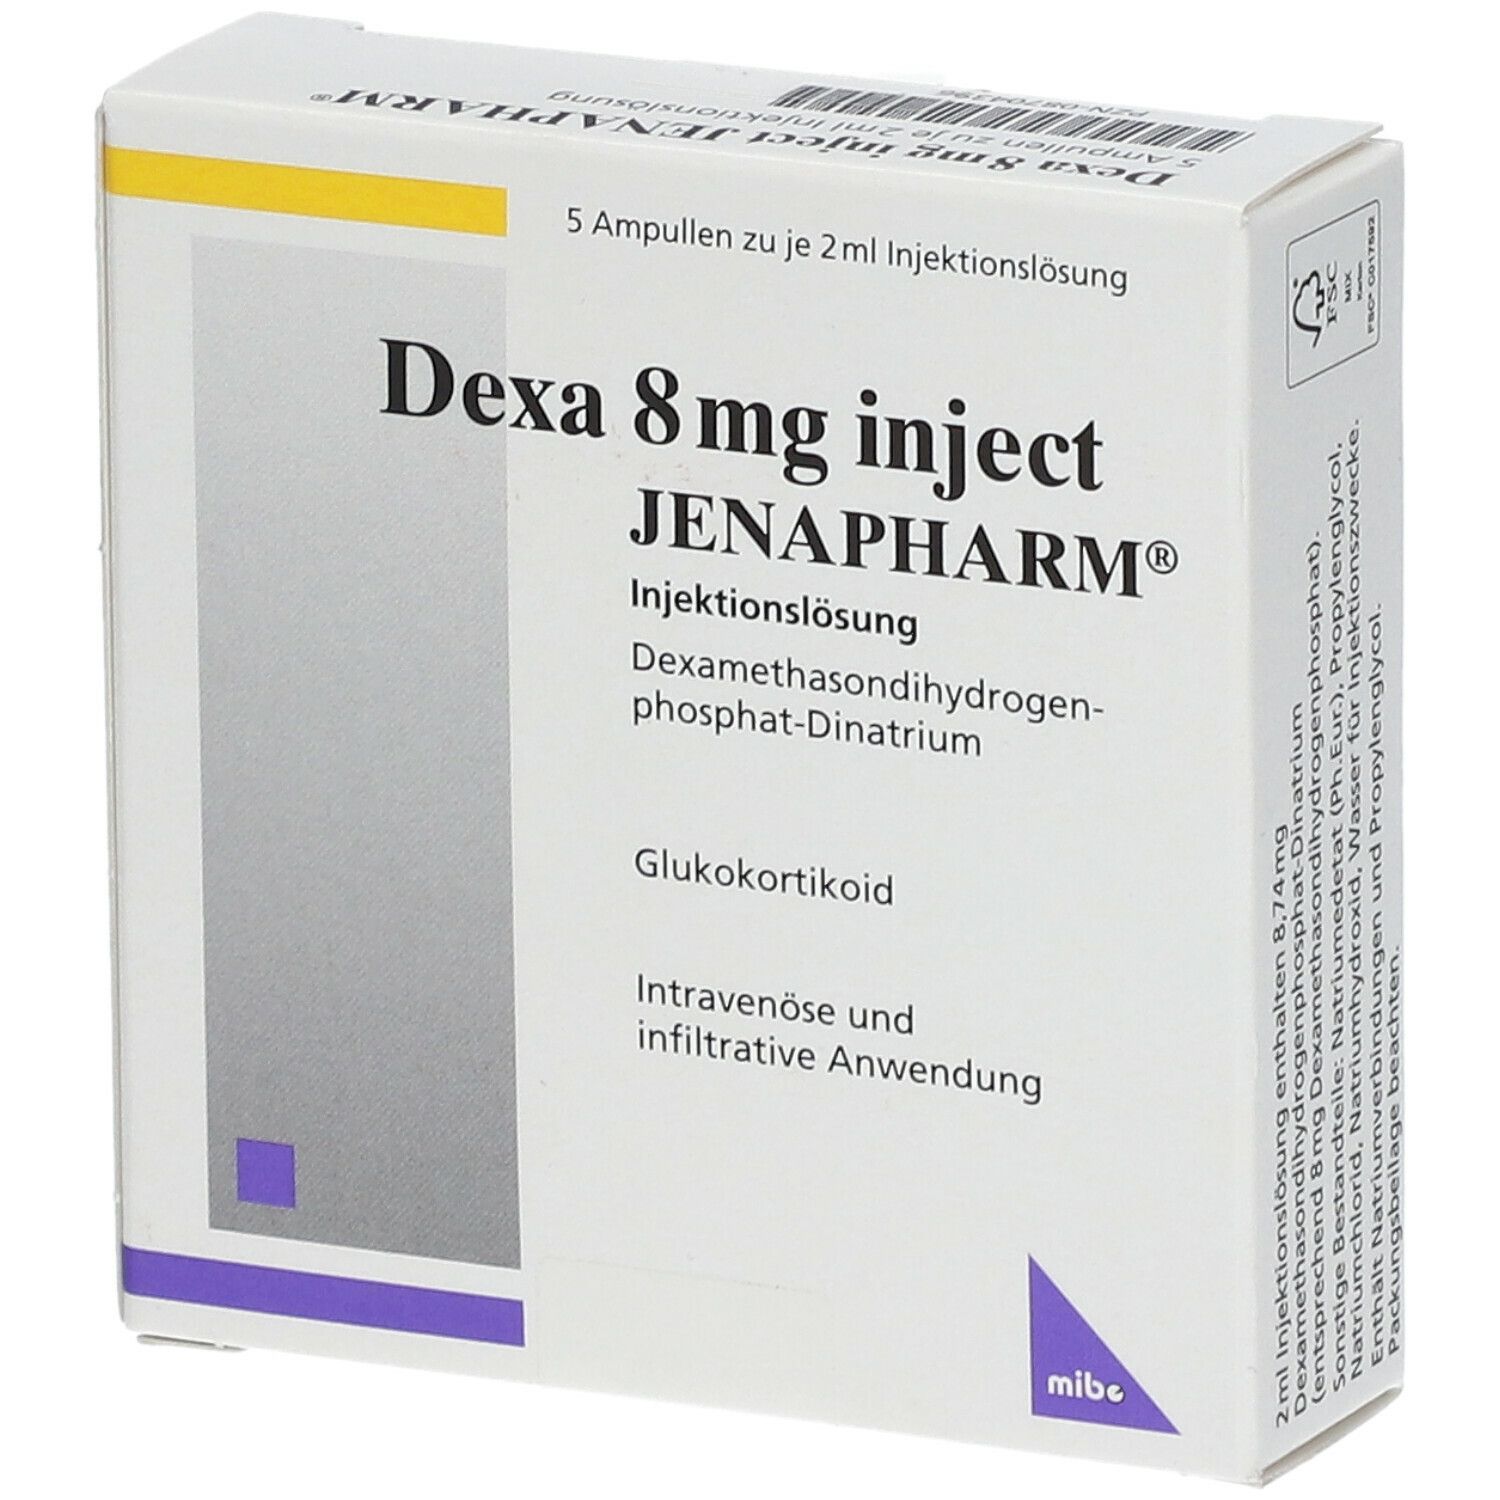 Dexa 8 mg